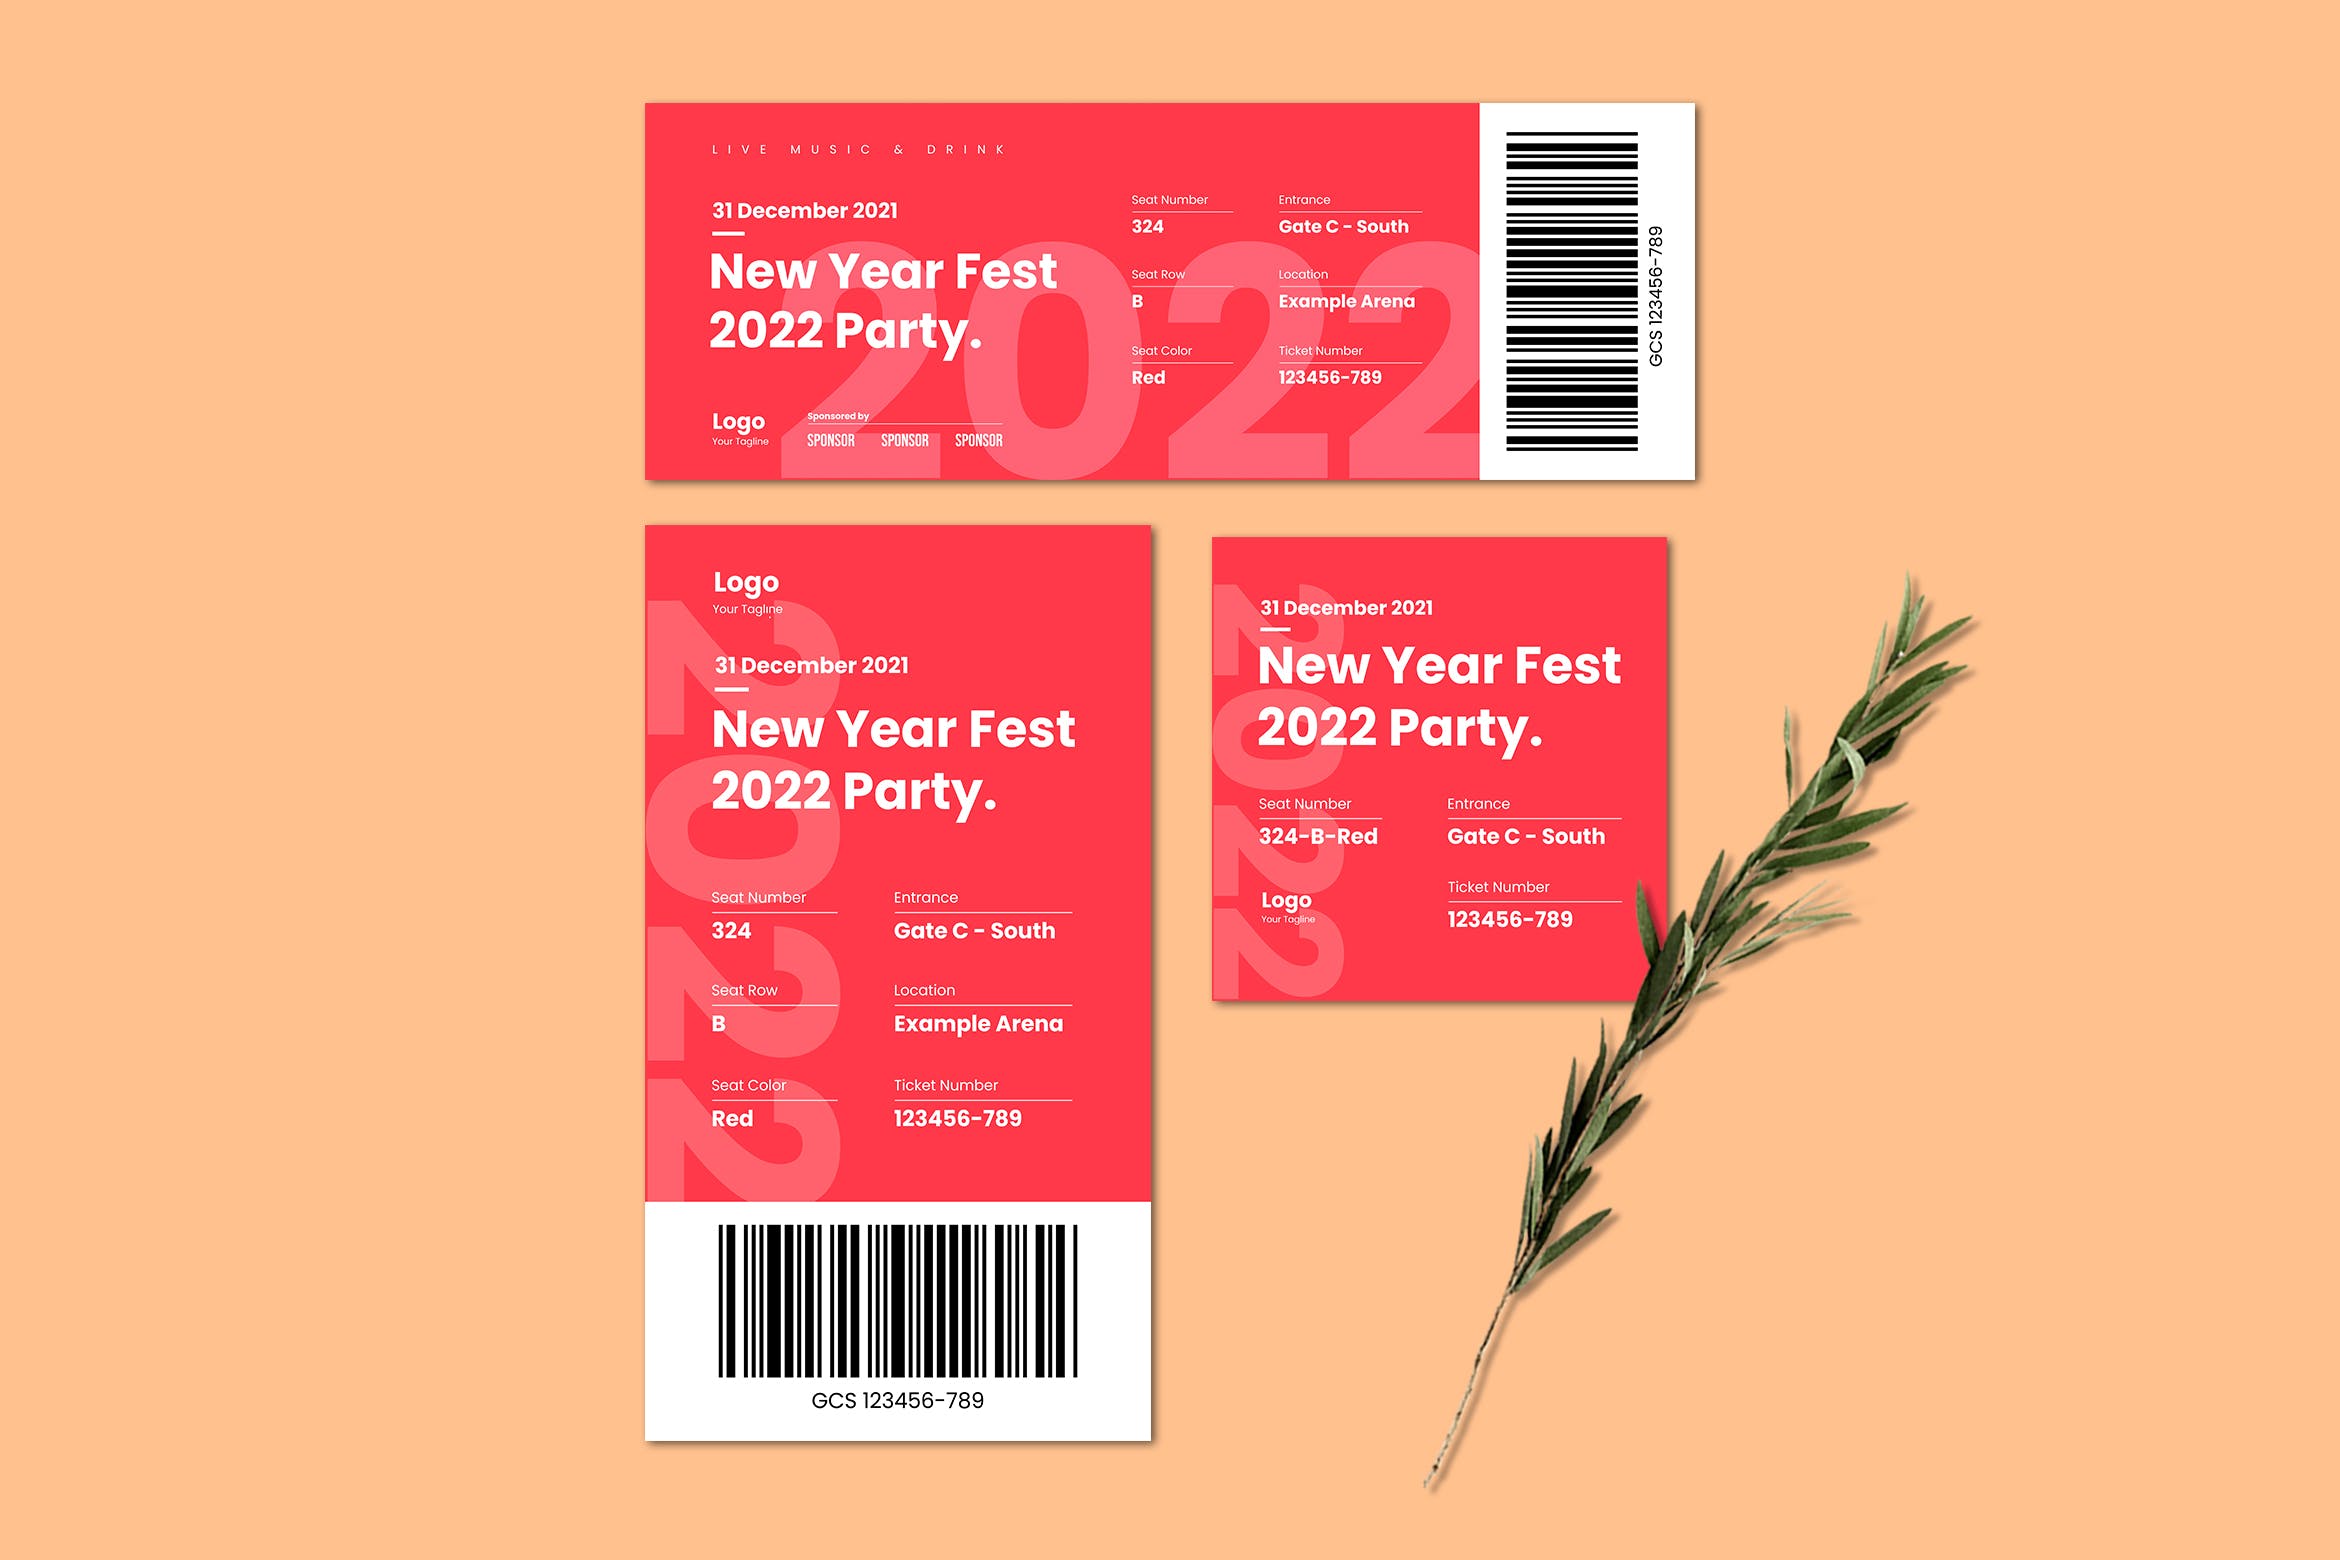 新春佳节电子票券设计模板 New Year Fest E-Ticket Template 设计素材 第1张